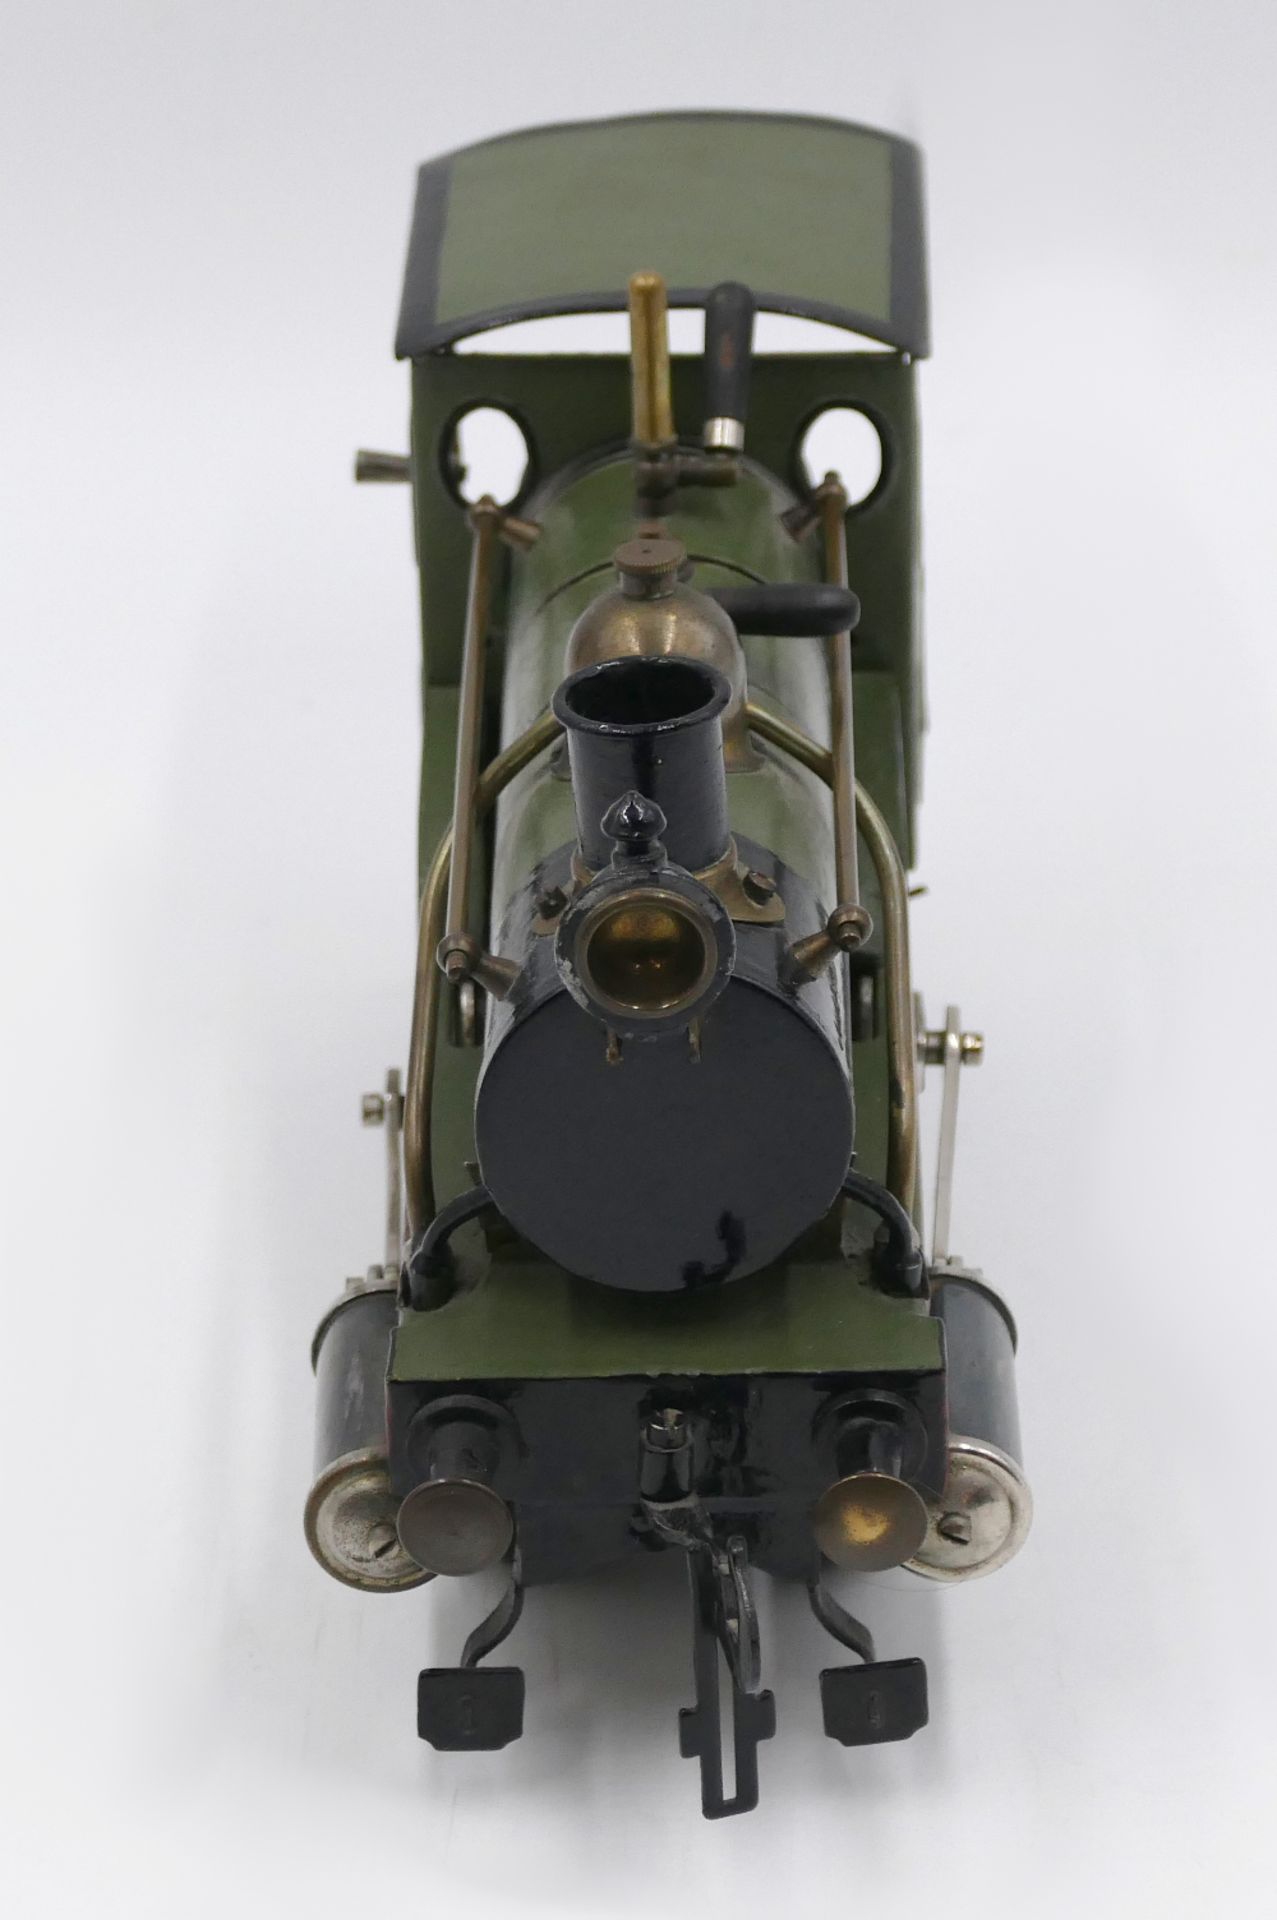 1 Dampflokomotive mit Spiritusantrieb wohl Georges CARETTE Nürnberg, Anfang 20. Jh., grün-schwarz be - Bild 2 aus 5